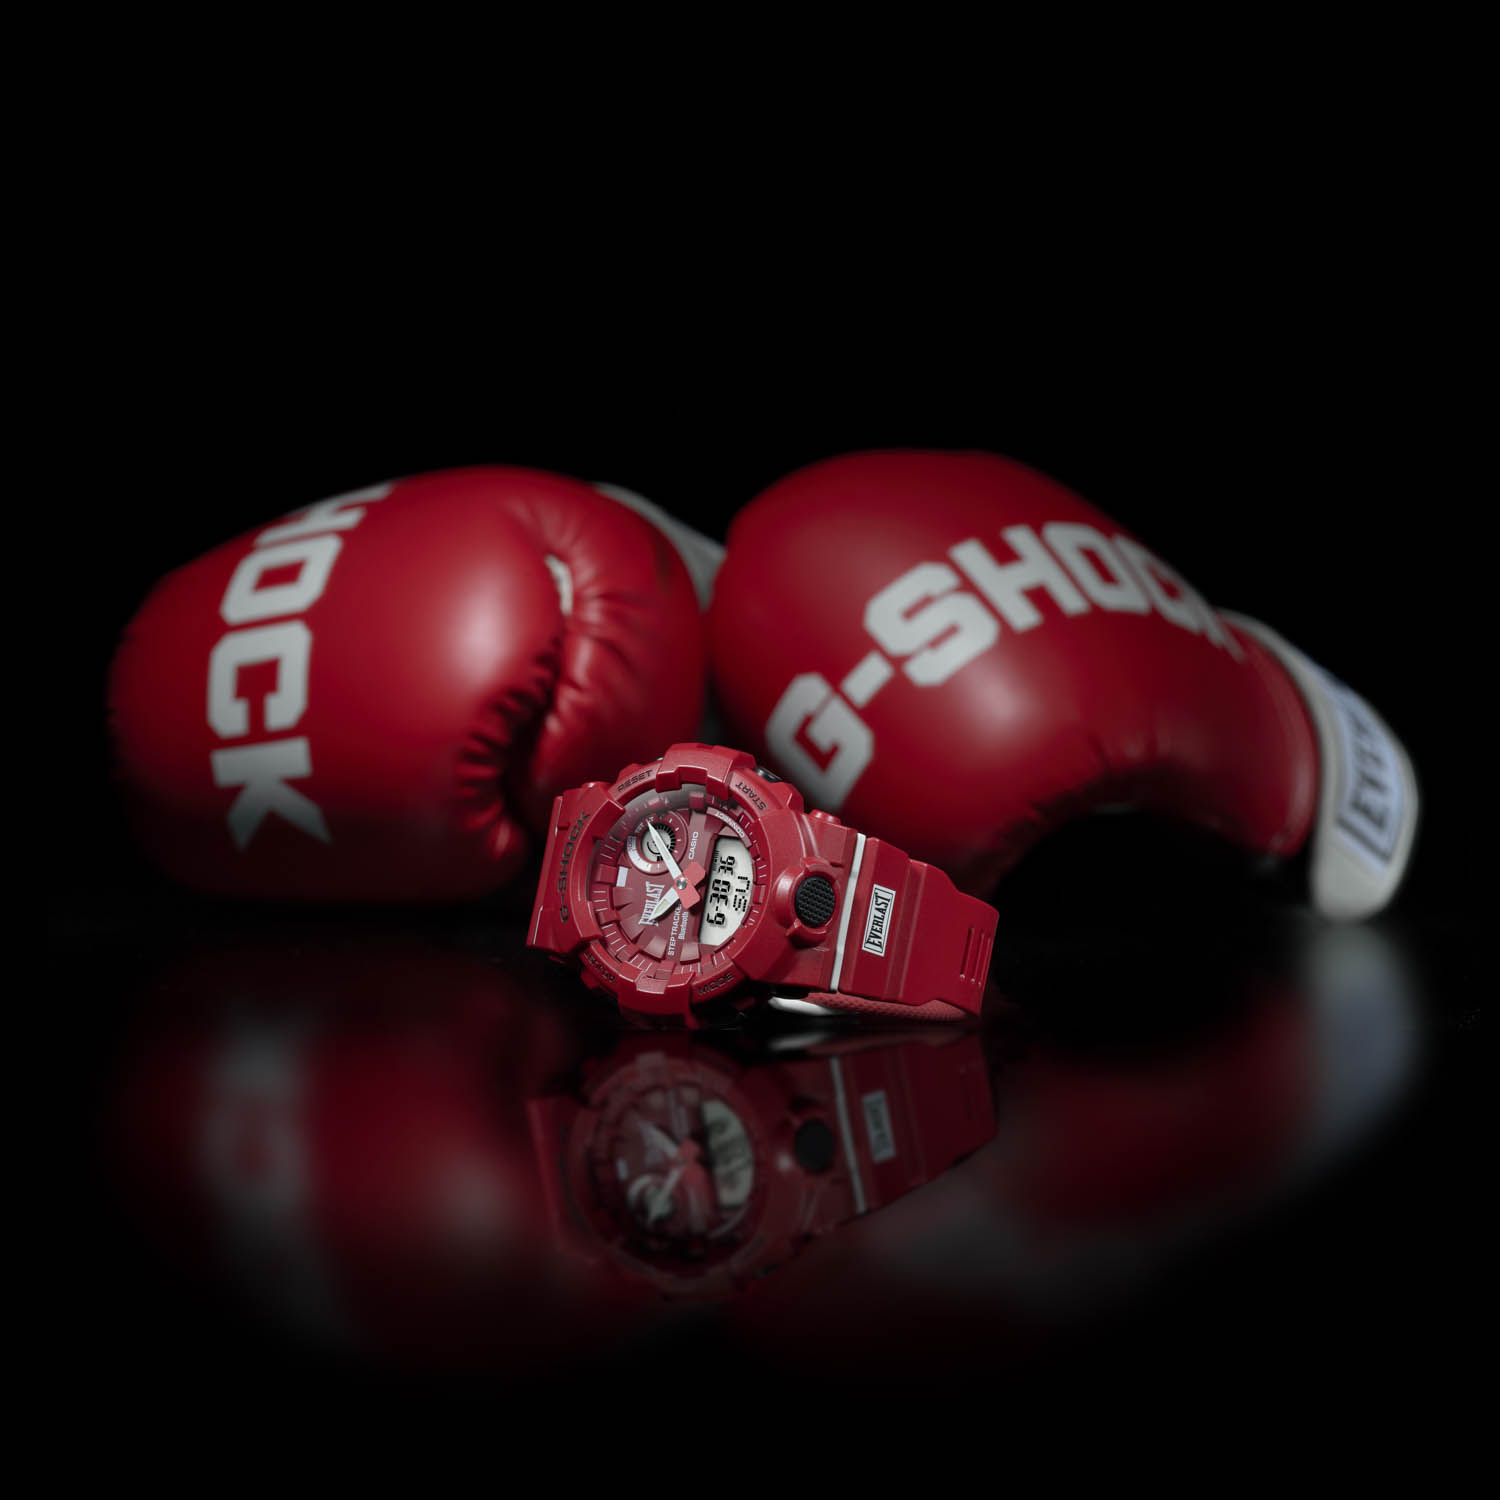 Zegarek G-SHOCK Everlast GBA-800 w kolorze czerwonym przedstawiony na tle rękawic bokserskich w kolorze czerwonym